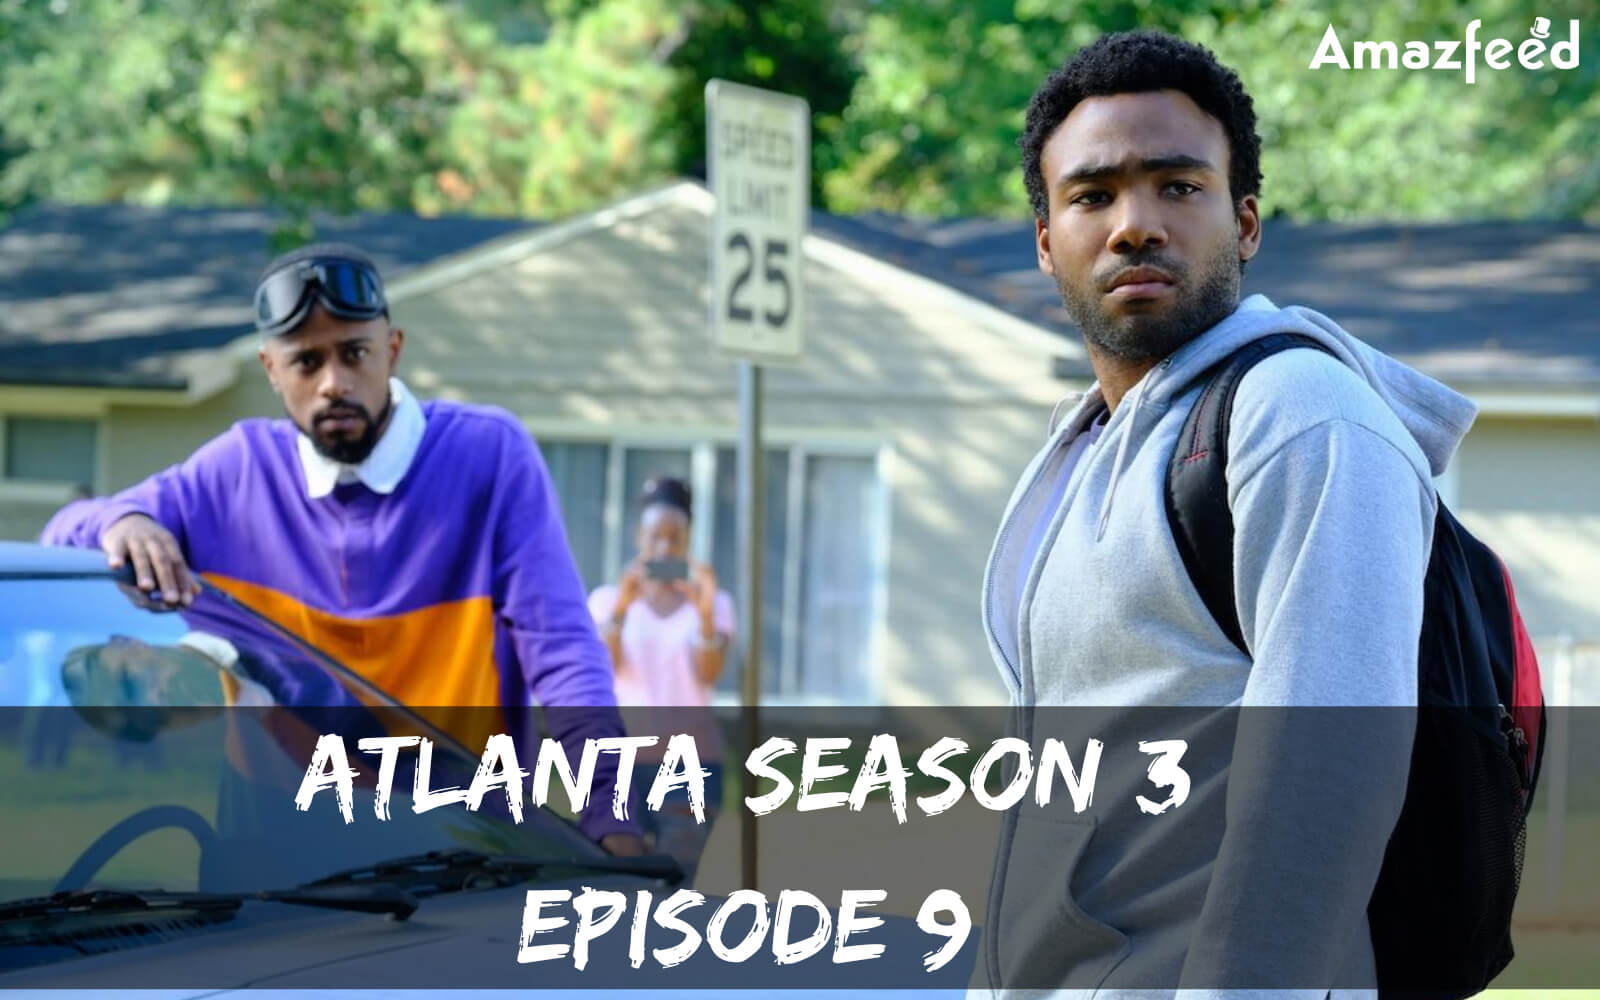 Atlanta Season 3 Episode 9 release date